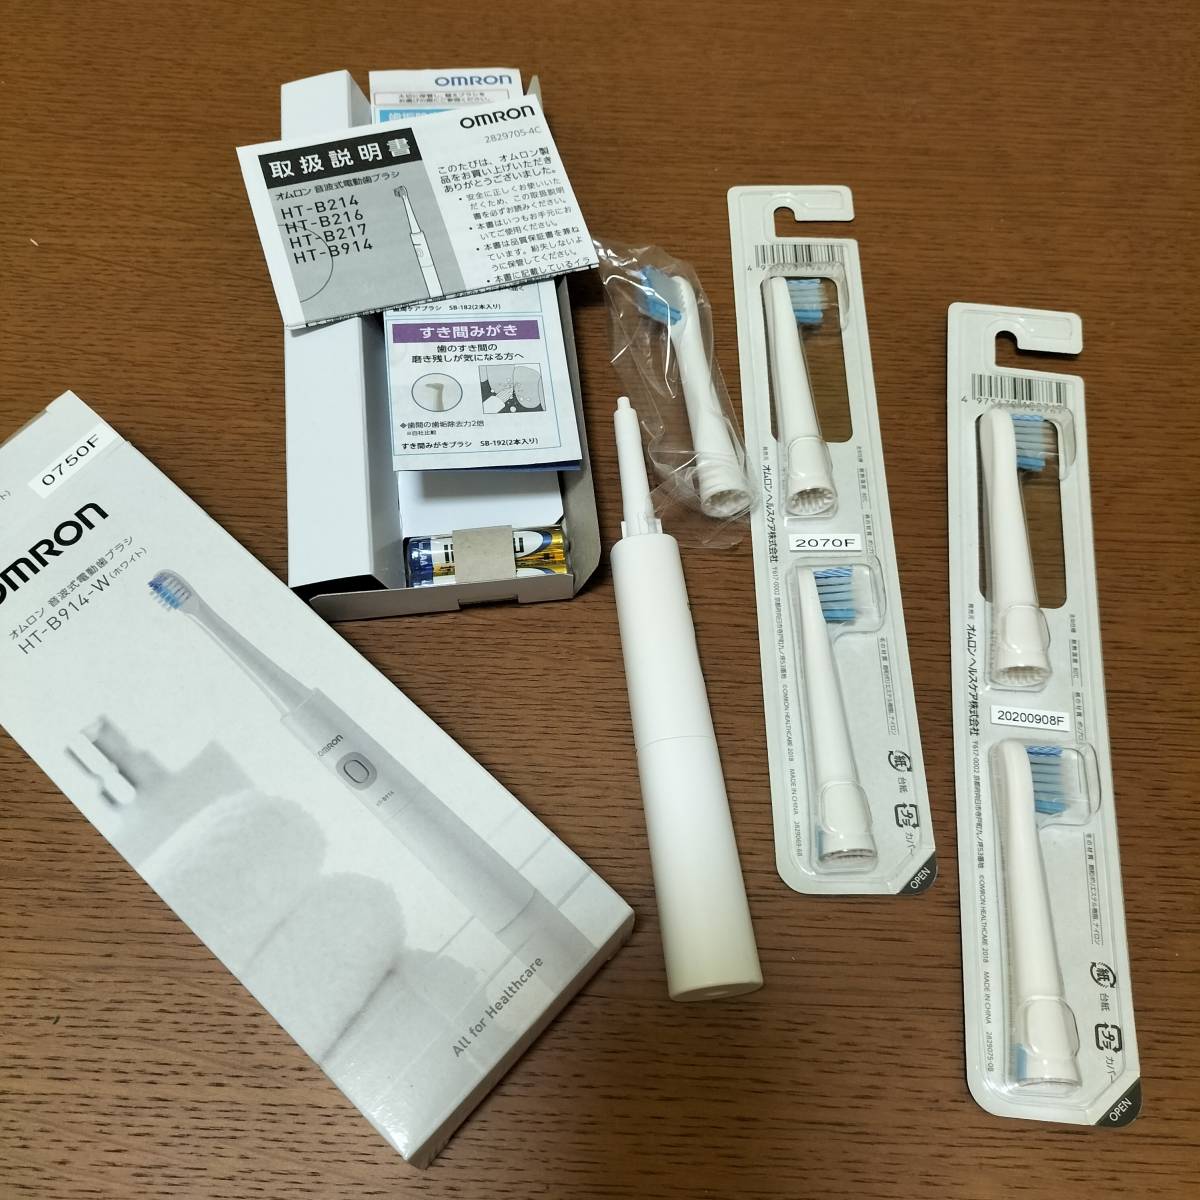 [ не использовался ] Omron аукстический тип электрический зубная щетка + заменяемая щетка 4шт.@HT-B914-W / SB-172 / SB-142